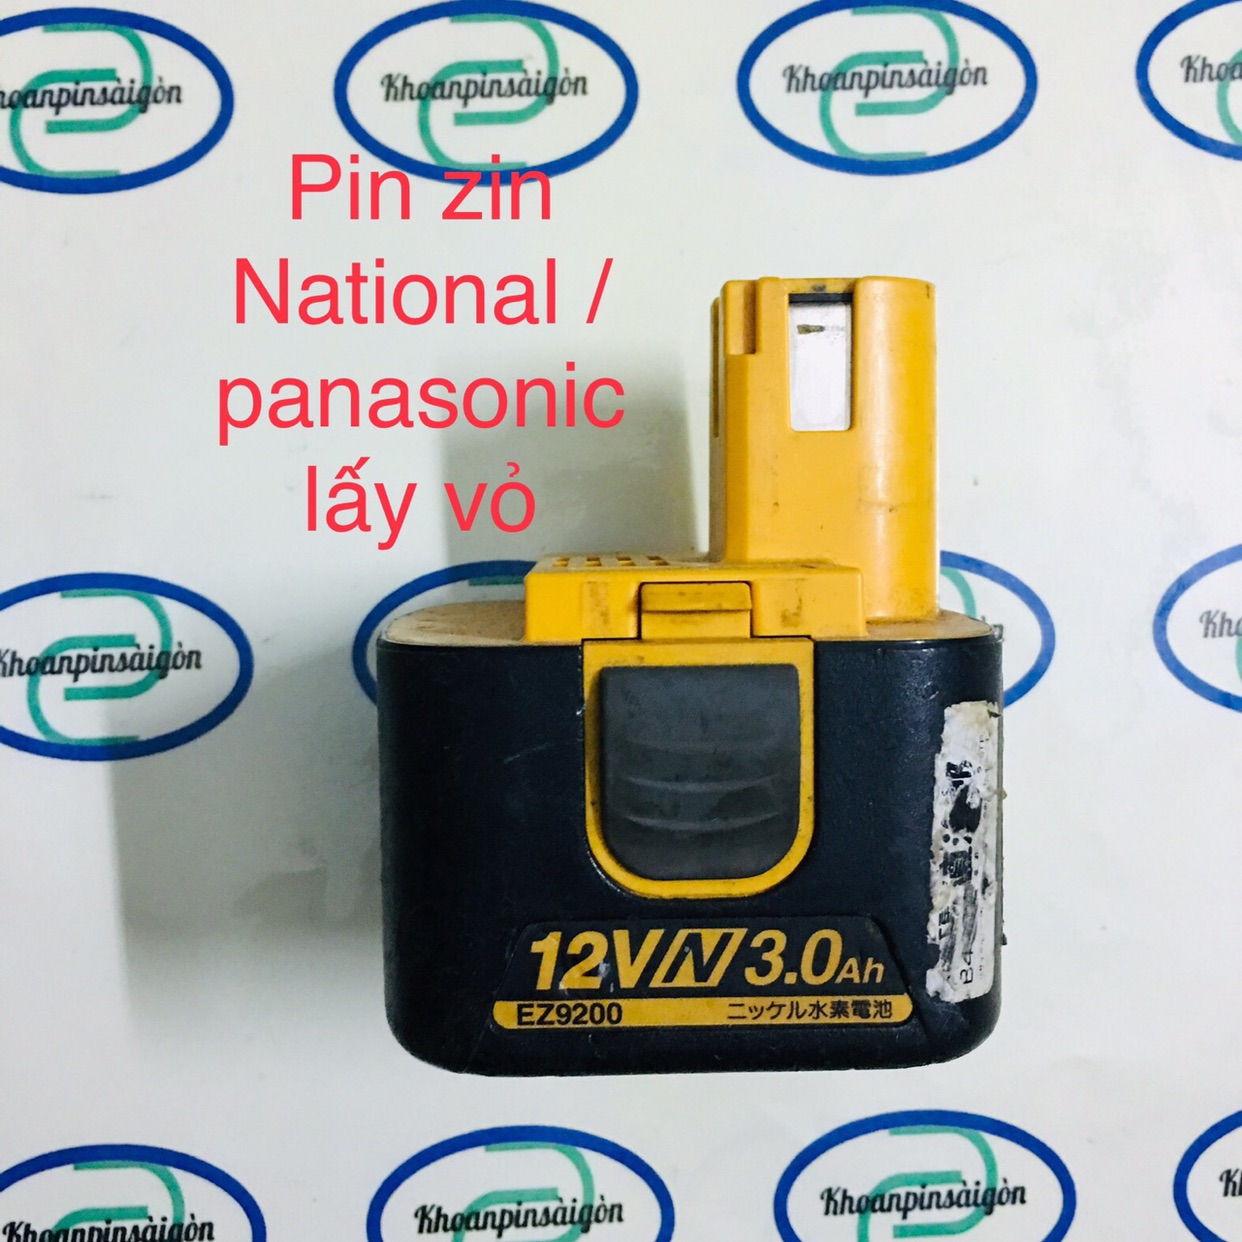 1 vỏ Pin zin National/ Panasonic 12vol , vỏ cũ (ko pin)